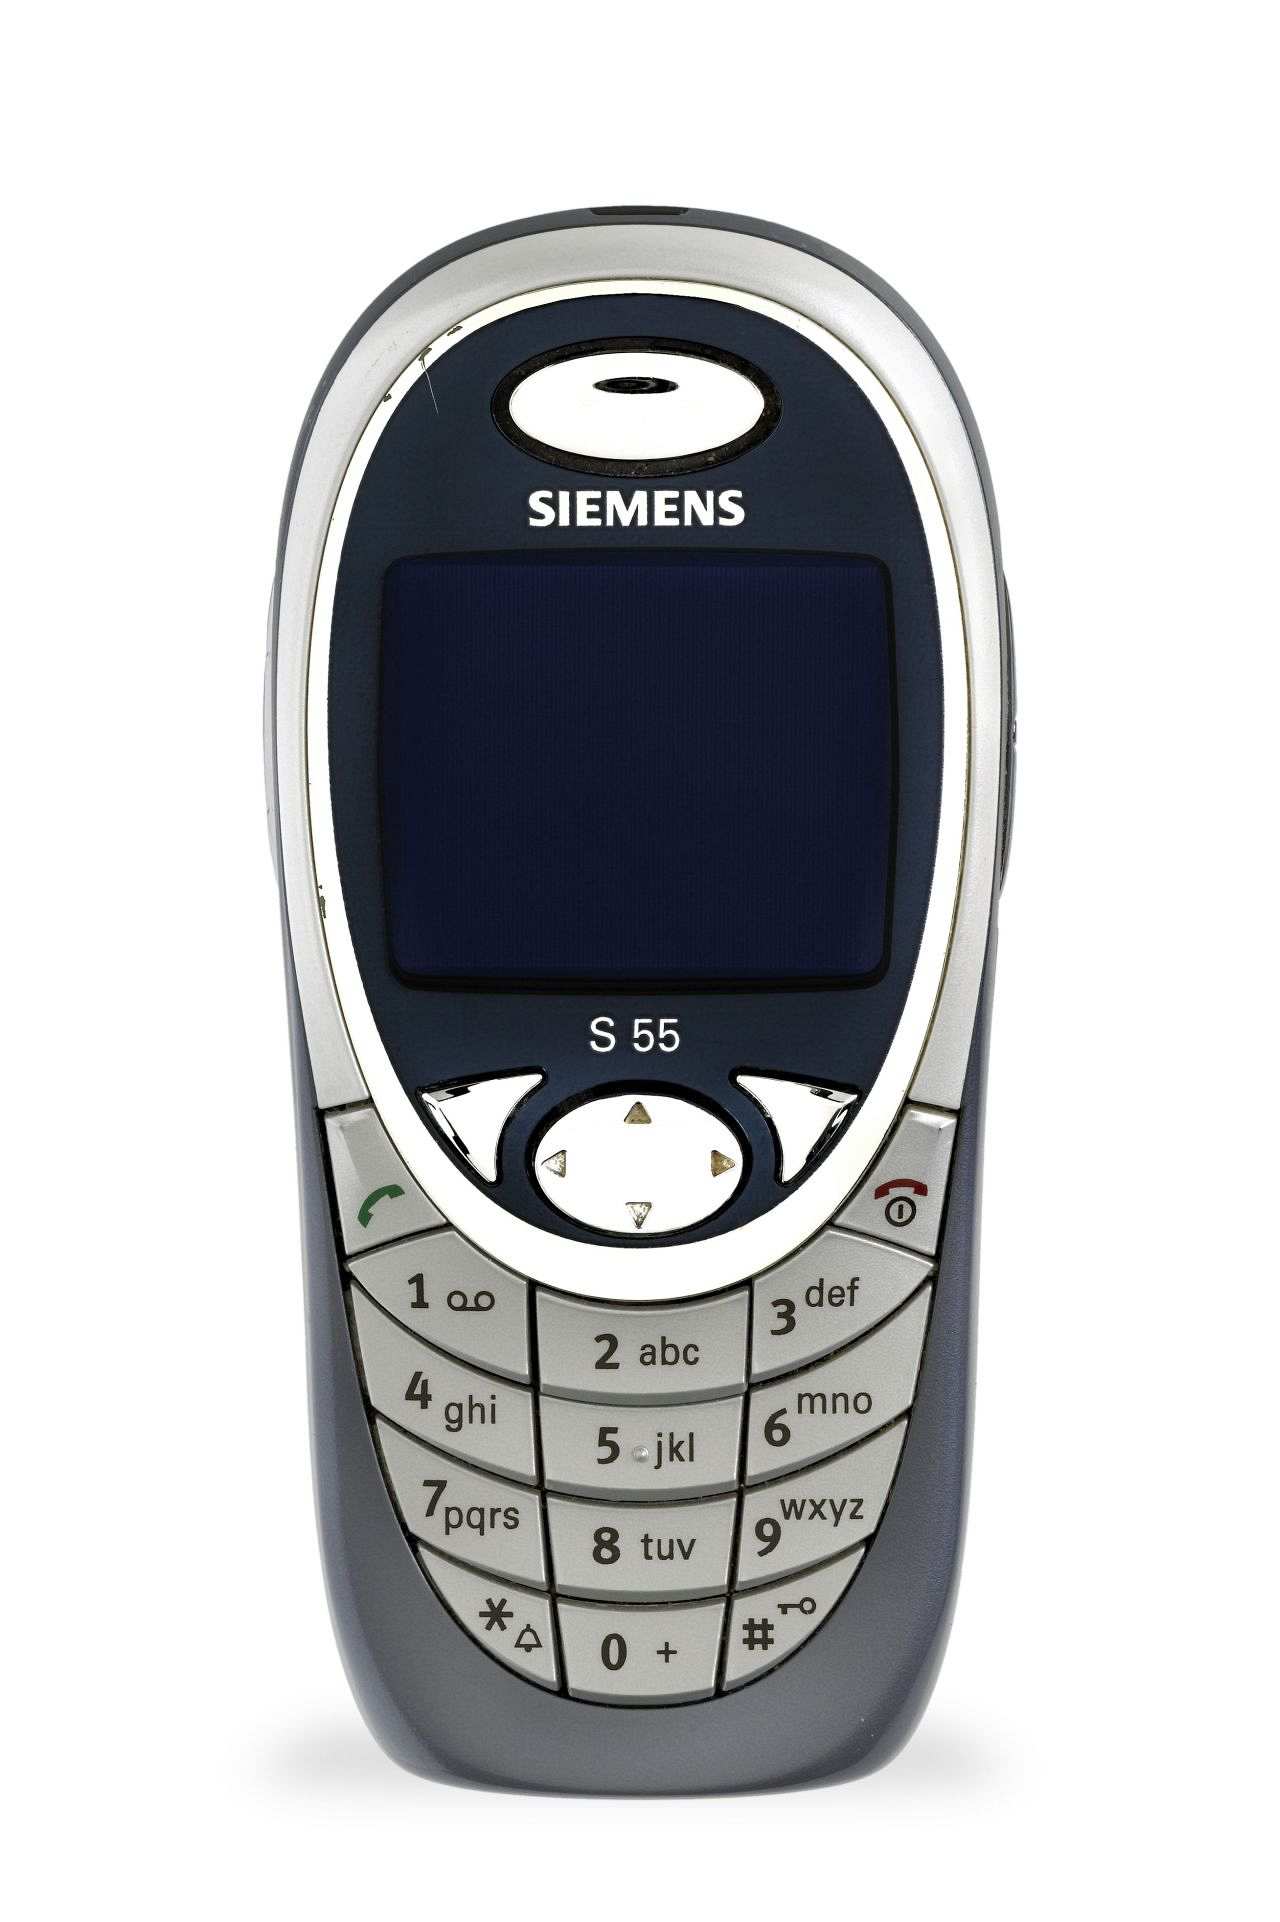 Blaugraues Handy mit silberfarbener Tastatur und quadratischem Display; oben Schriftzug: Siemens, unter dem Display: S 55.